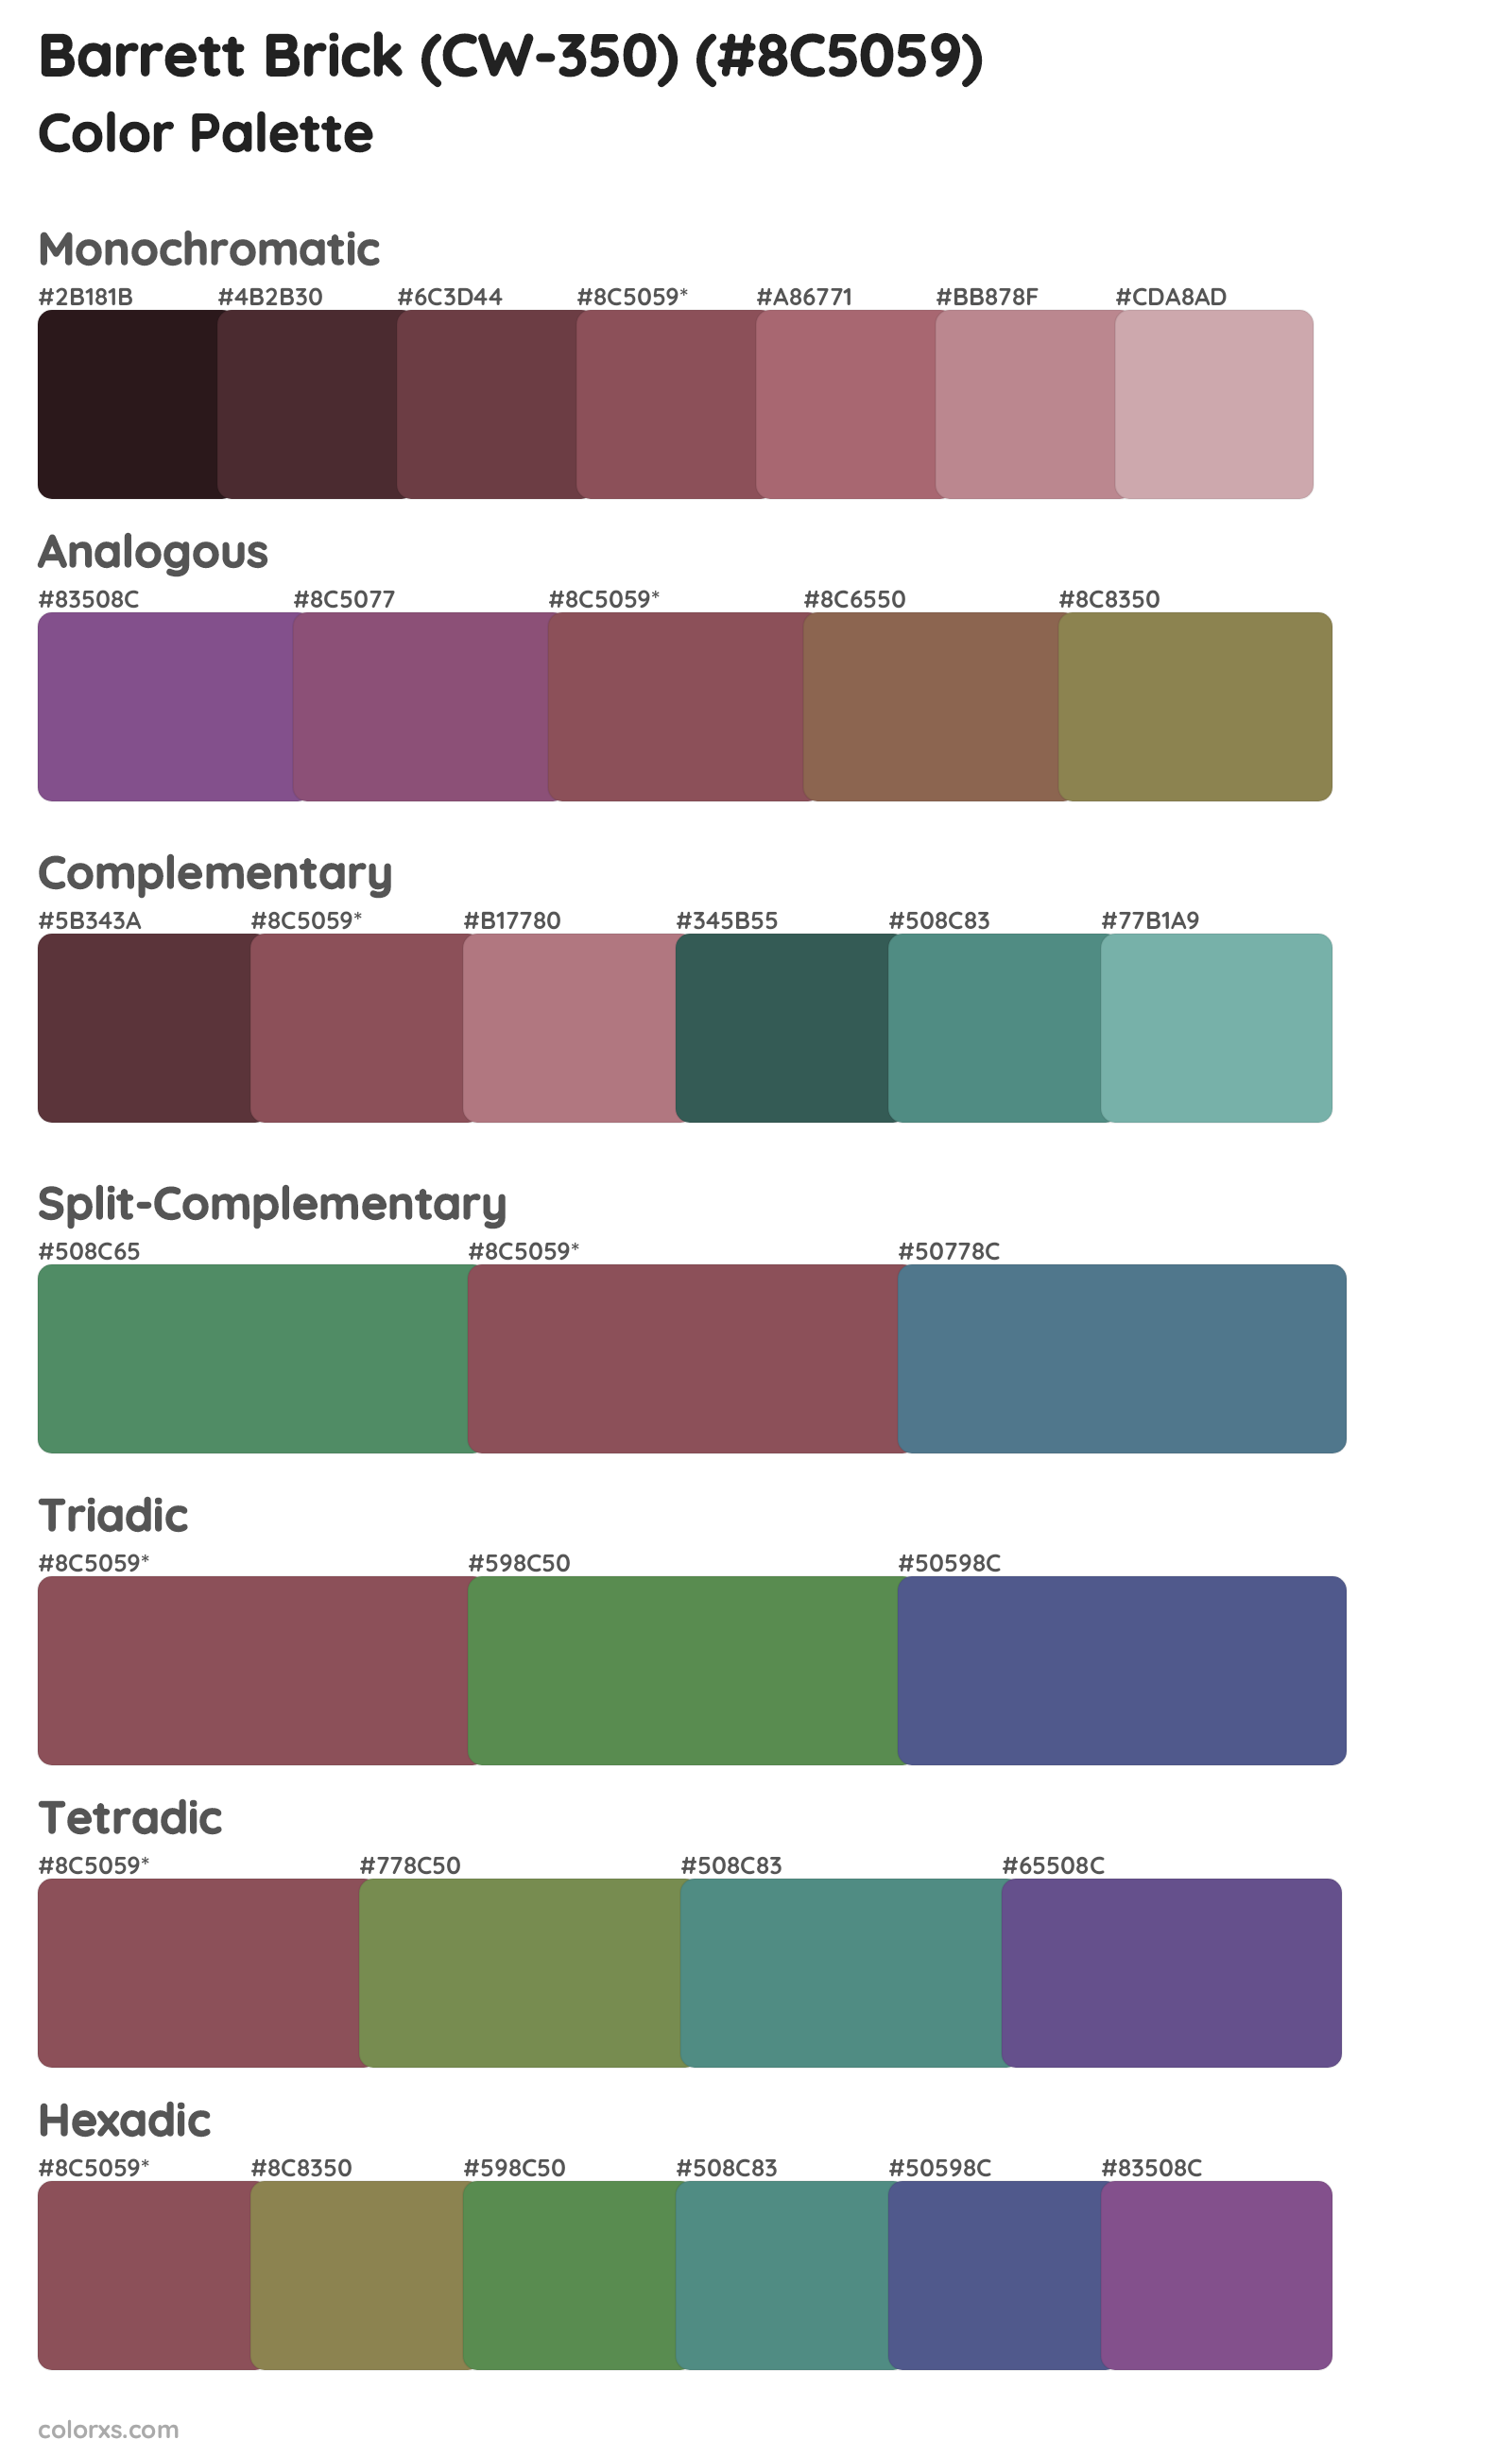 Barrett Brick (CW-350) Color Scheme Palettes